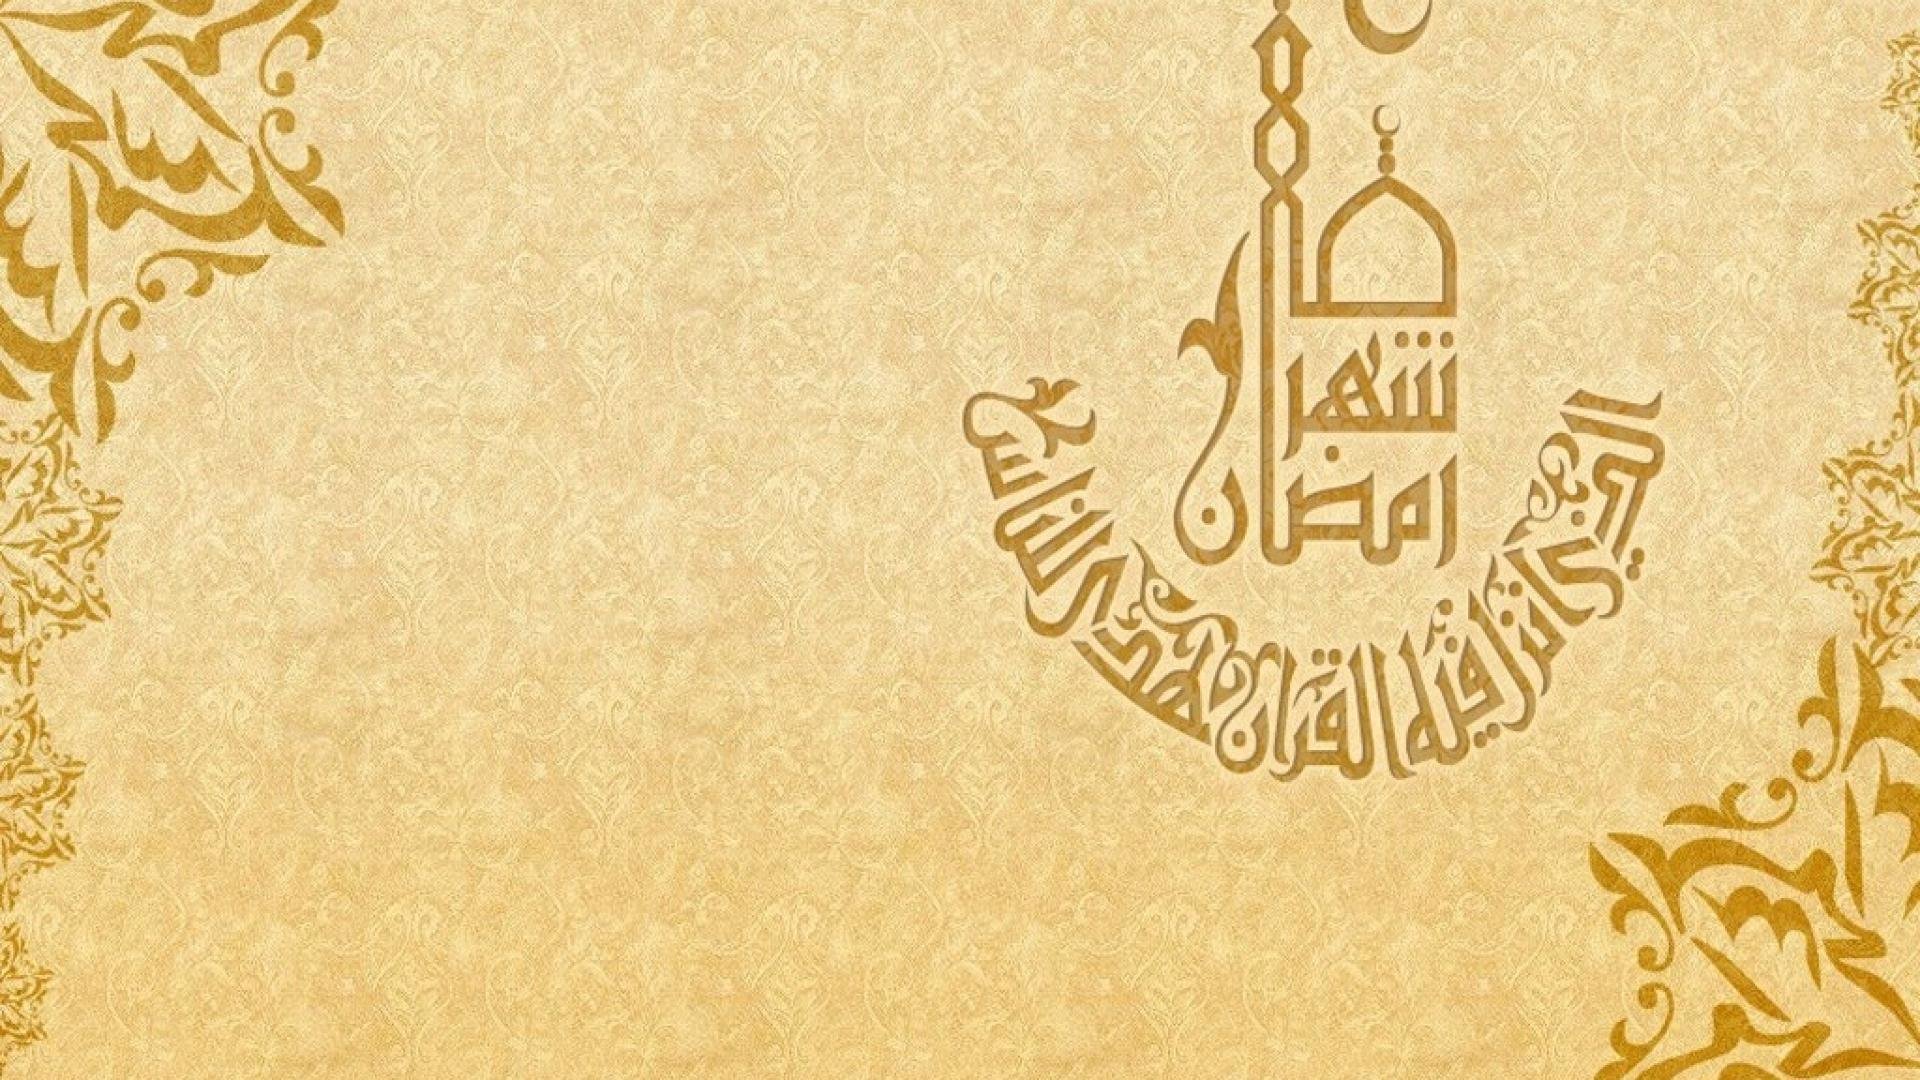 Казахский язык арабский. Мусульманский фон. Восточный фон. Фон в мусульманском стиле. Рамки в арабском стиле.